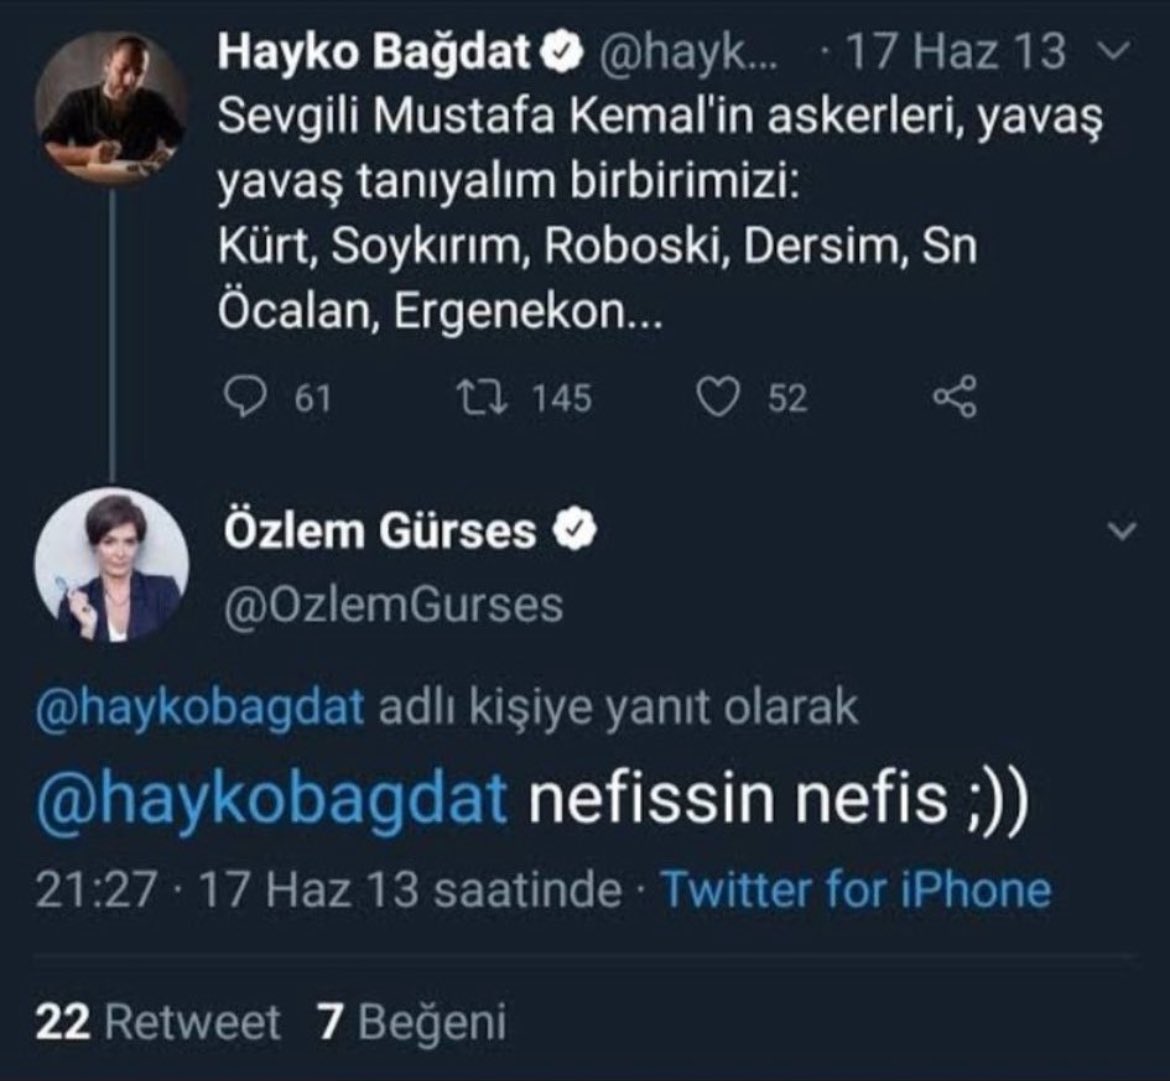 @OzlemGurses Aynı senin gibi Özlem Gürses 

Nefis olan ne orada, açıklar mısın ???

Terörist PKK elebaşı Abdullah Öcalan mı